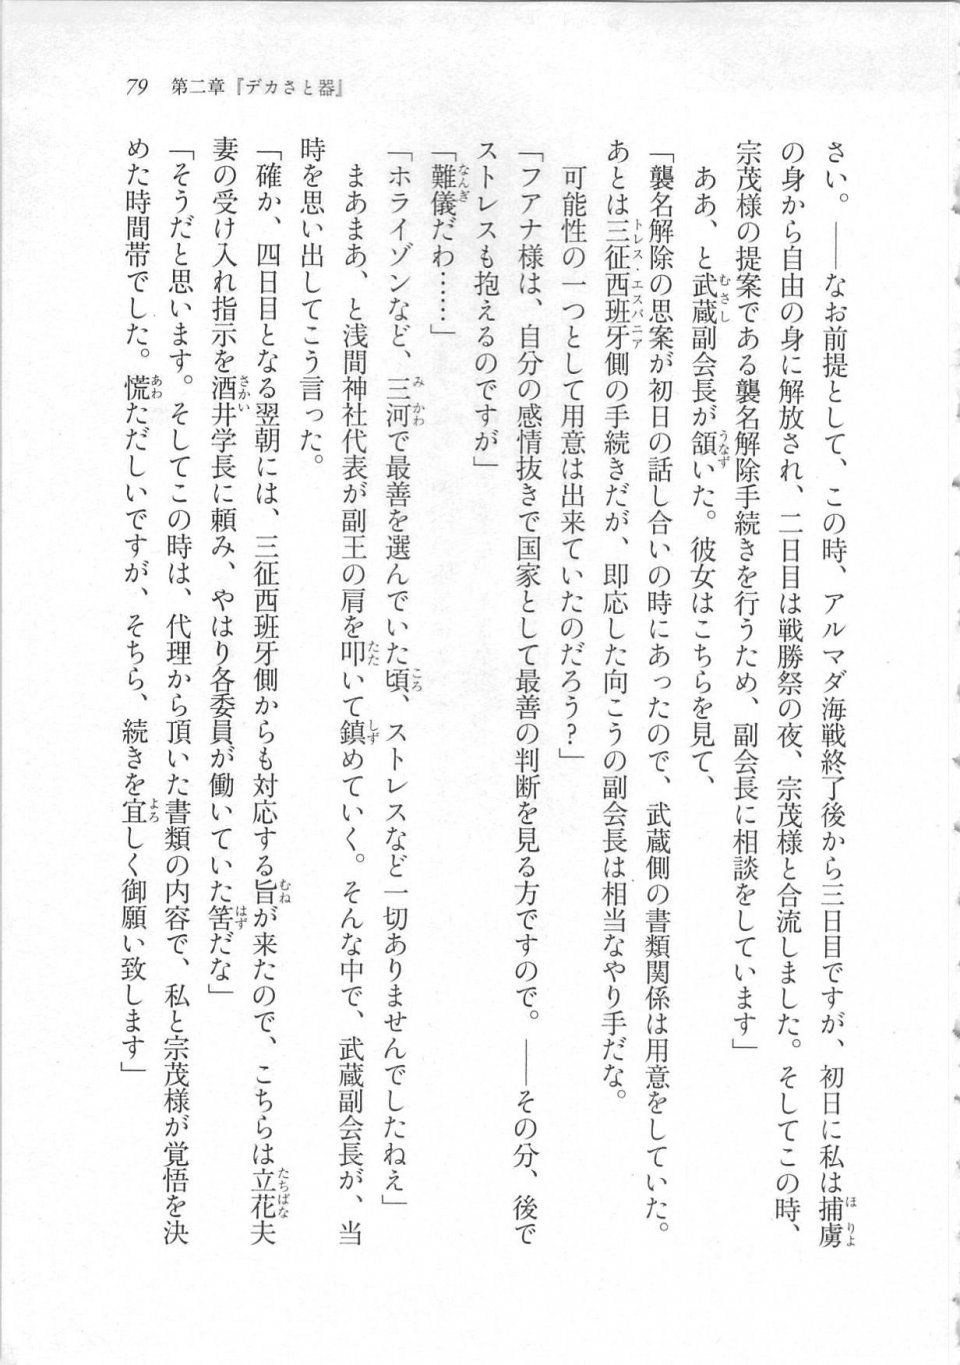 Kyoukai Senjou no Horizon LN Sidestory Vol 3 - Photo #83